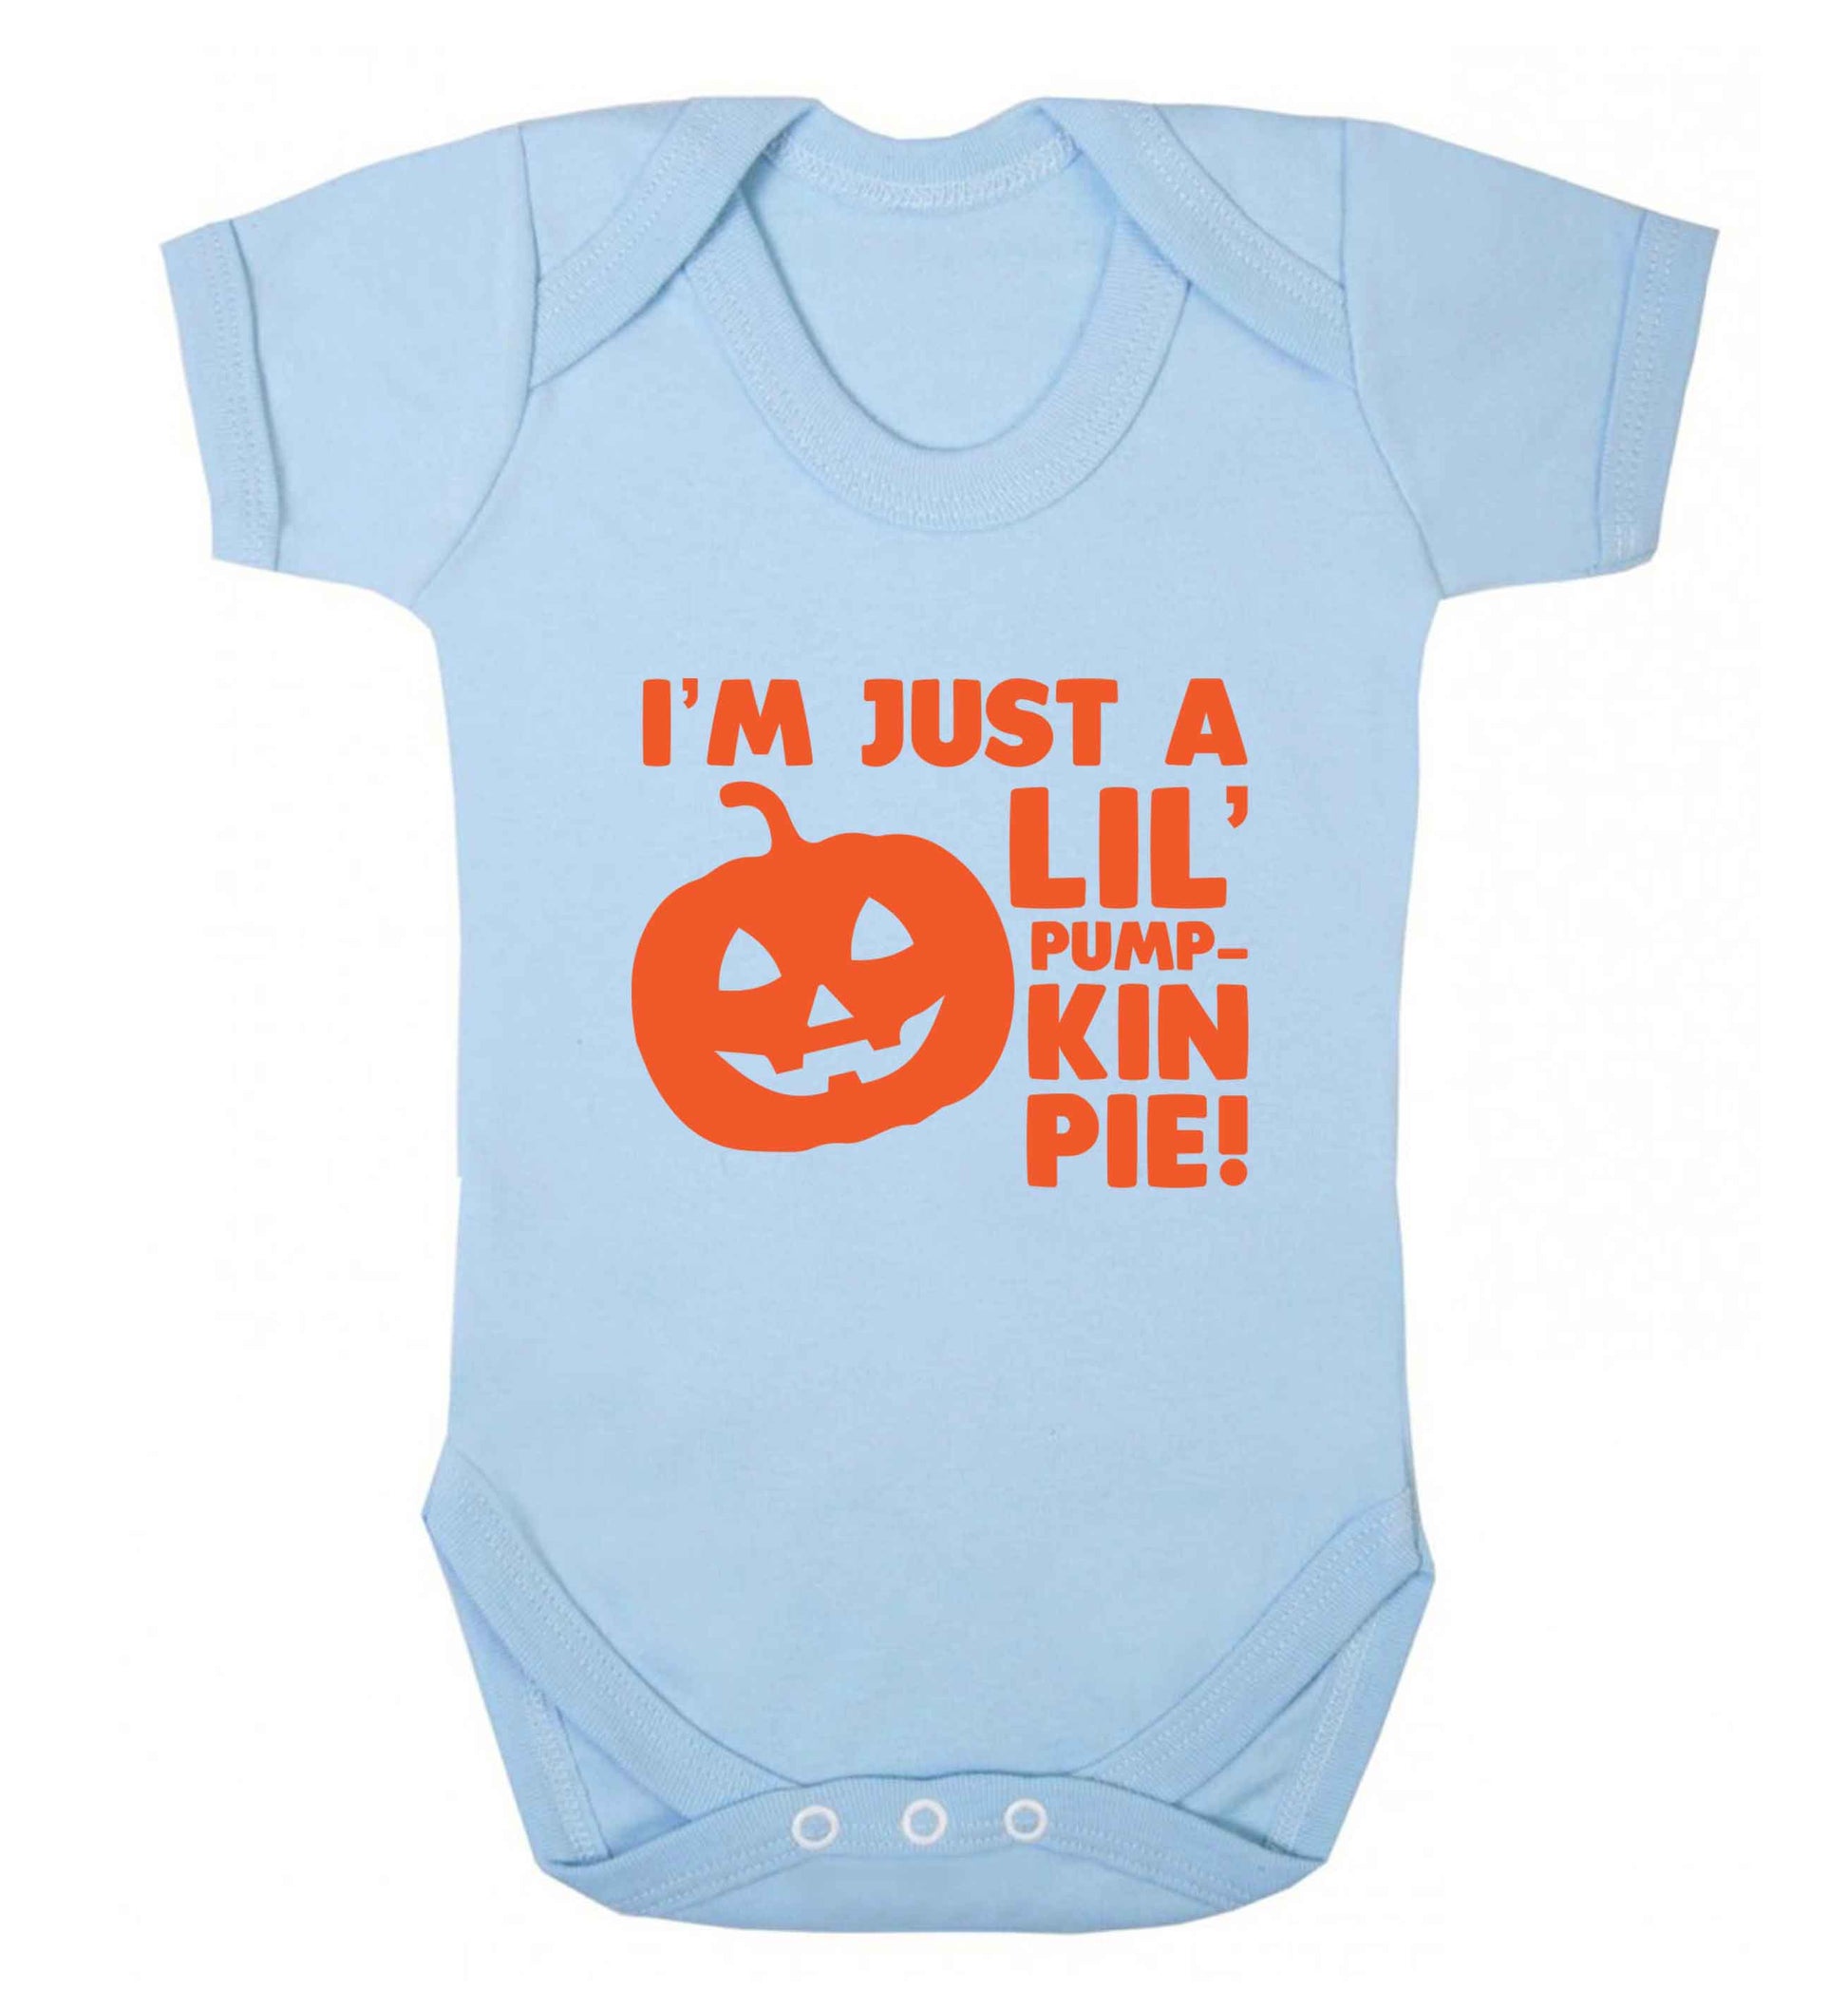 I'm just a lil' pumpkin pie baby vest pale blue 18-24 months